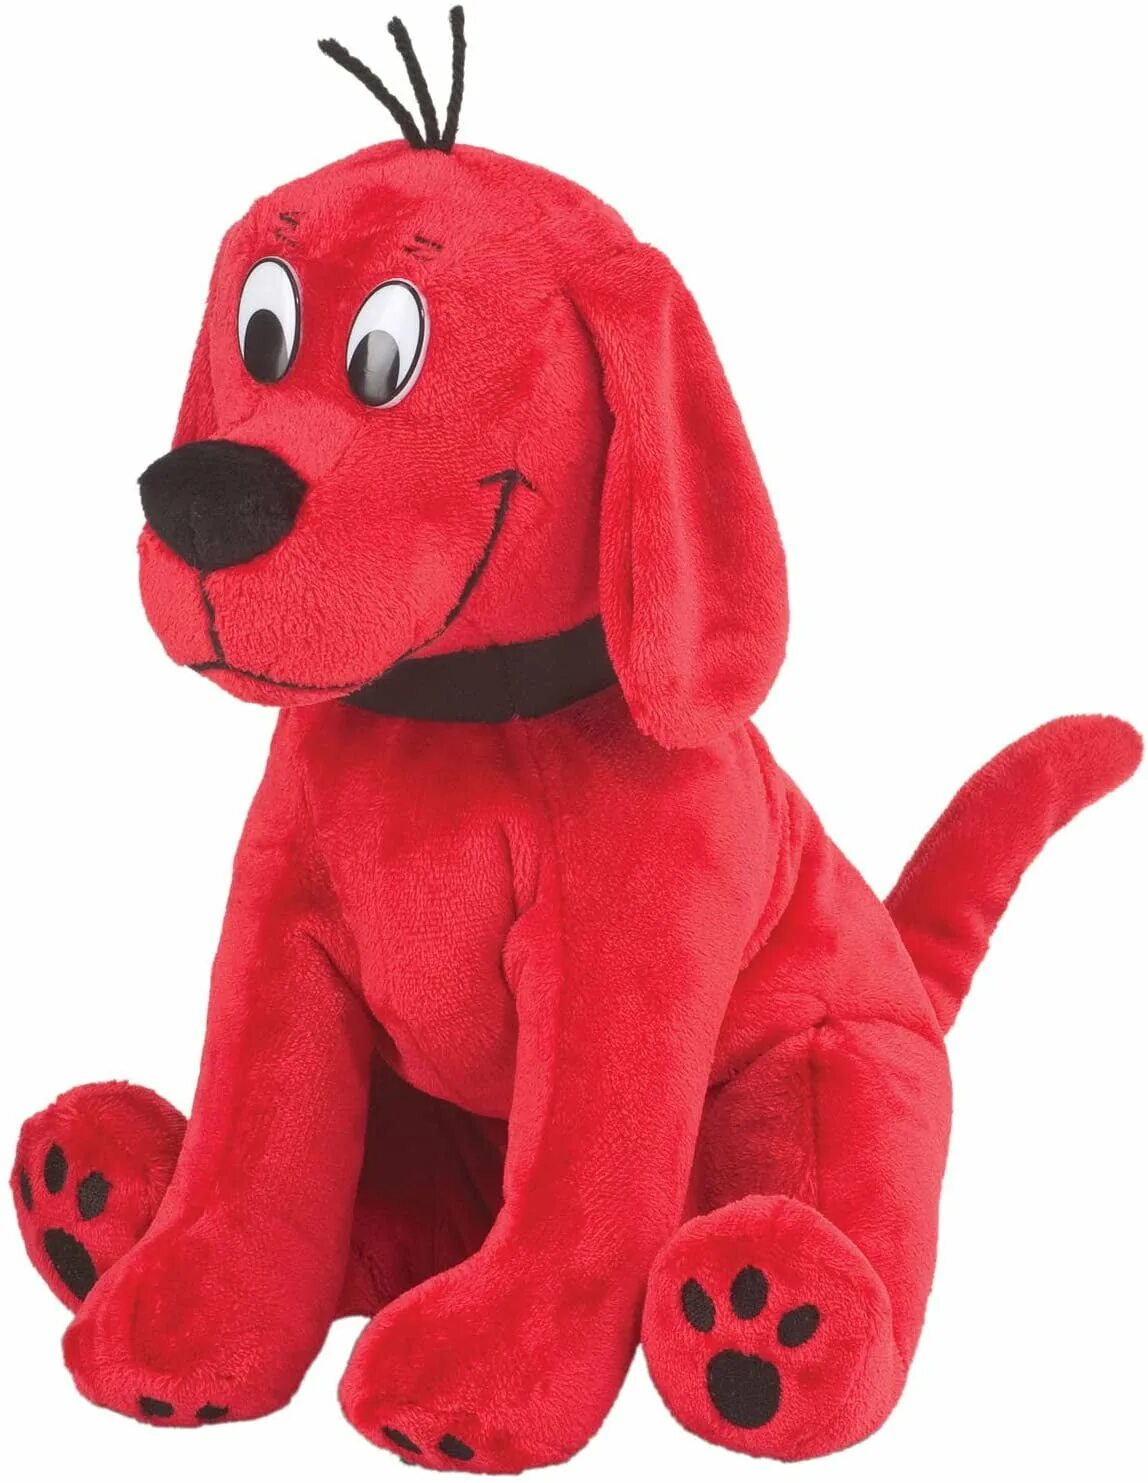 Красный плюшевый пёс Клиффорд. Игрушка Клиффорд пёс. Большой красный пёс Клиффорд мягкая игрушка. Клиффорд большая красная собака игрушка. Красная собака купить